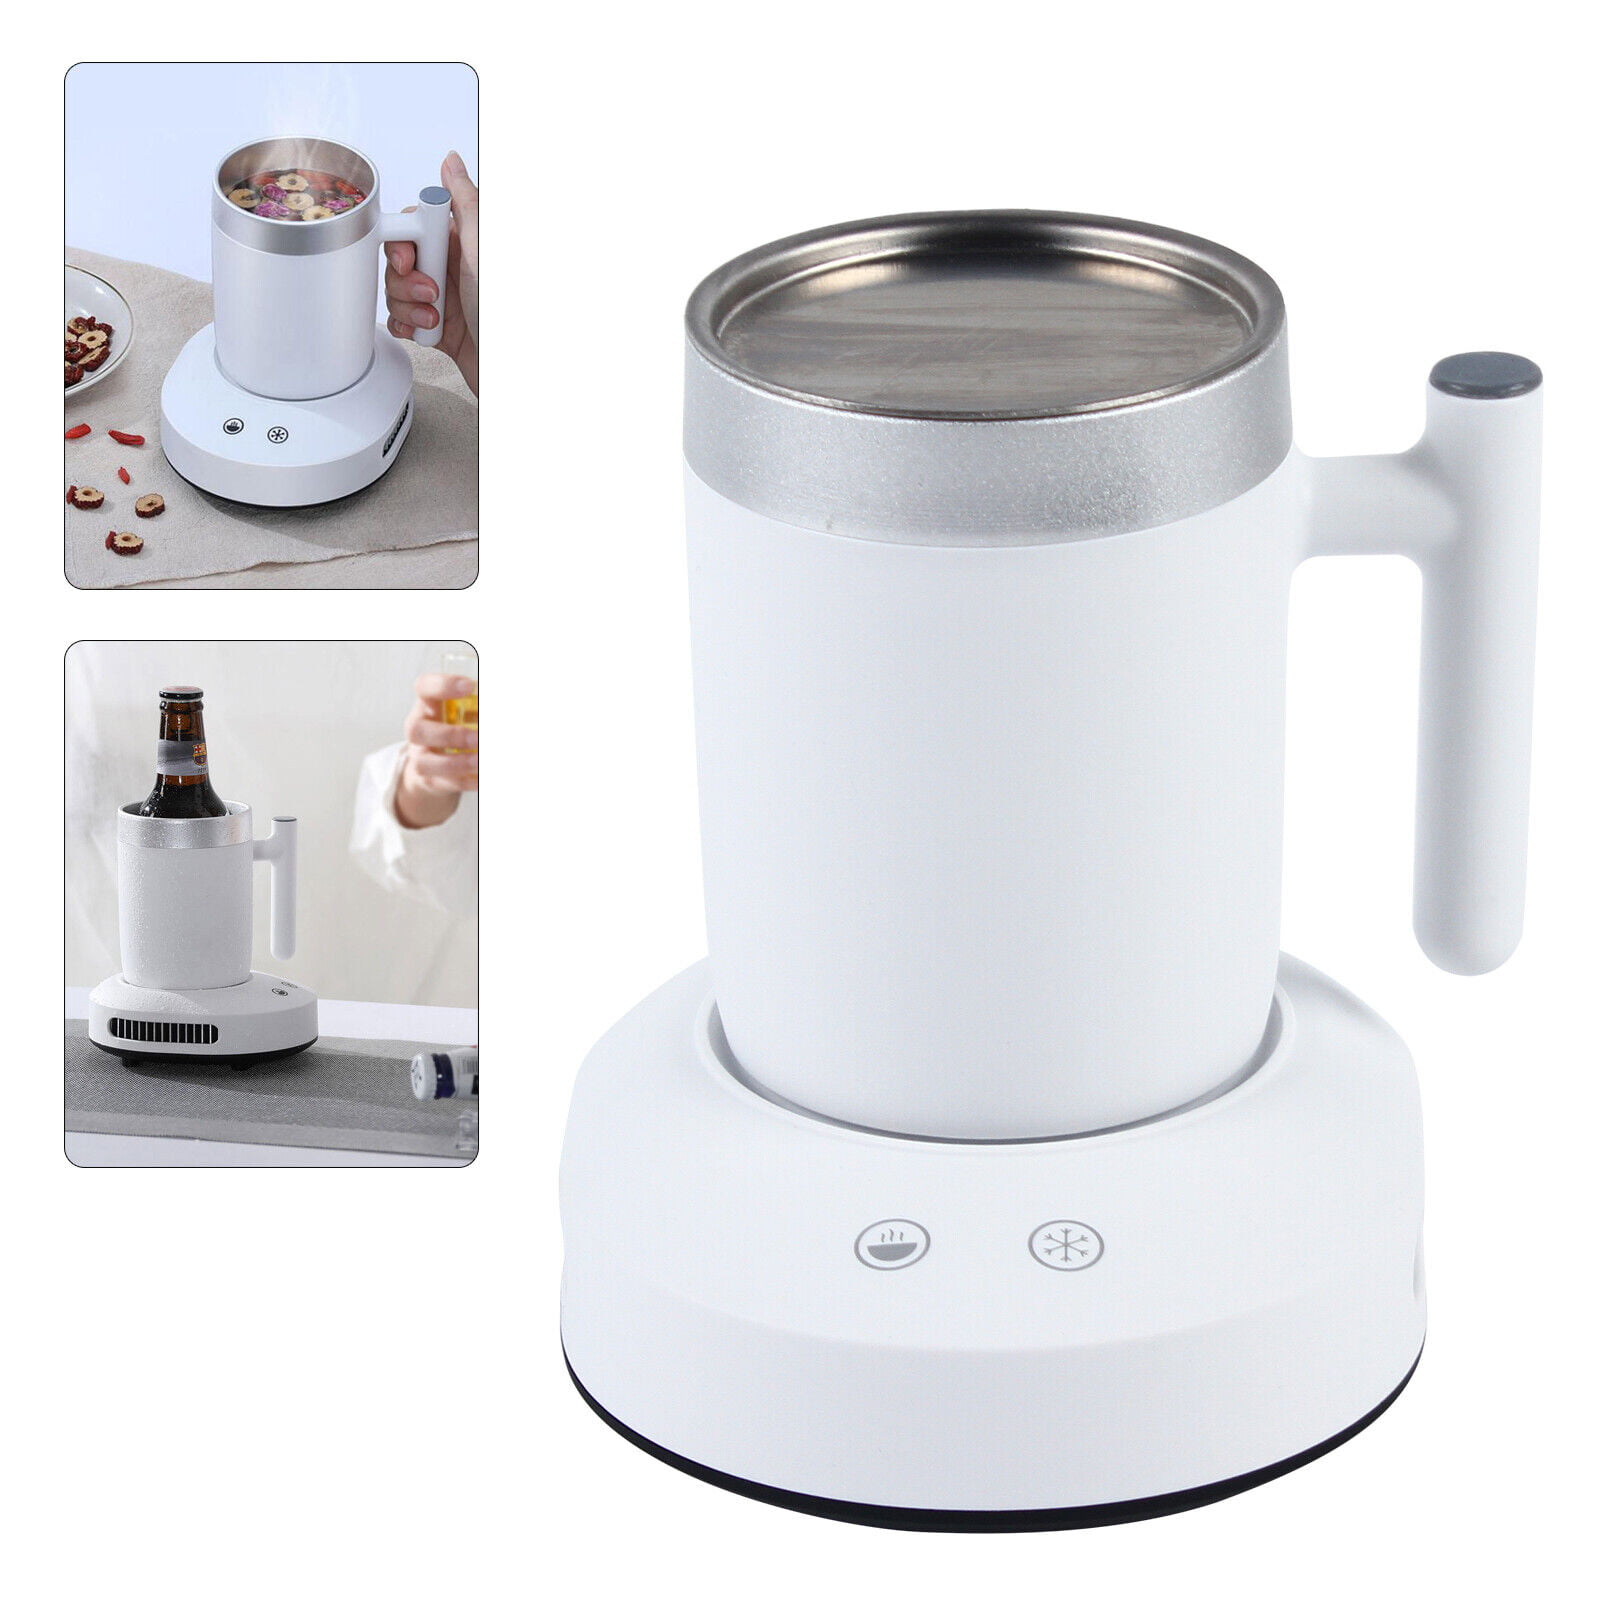 House Gem Mug Warmer - 36W Coffee Mug Warmer for Desk with